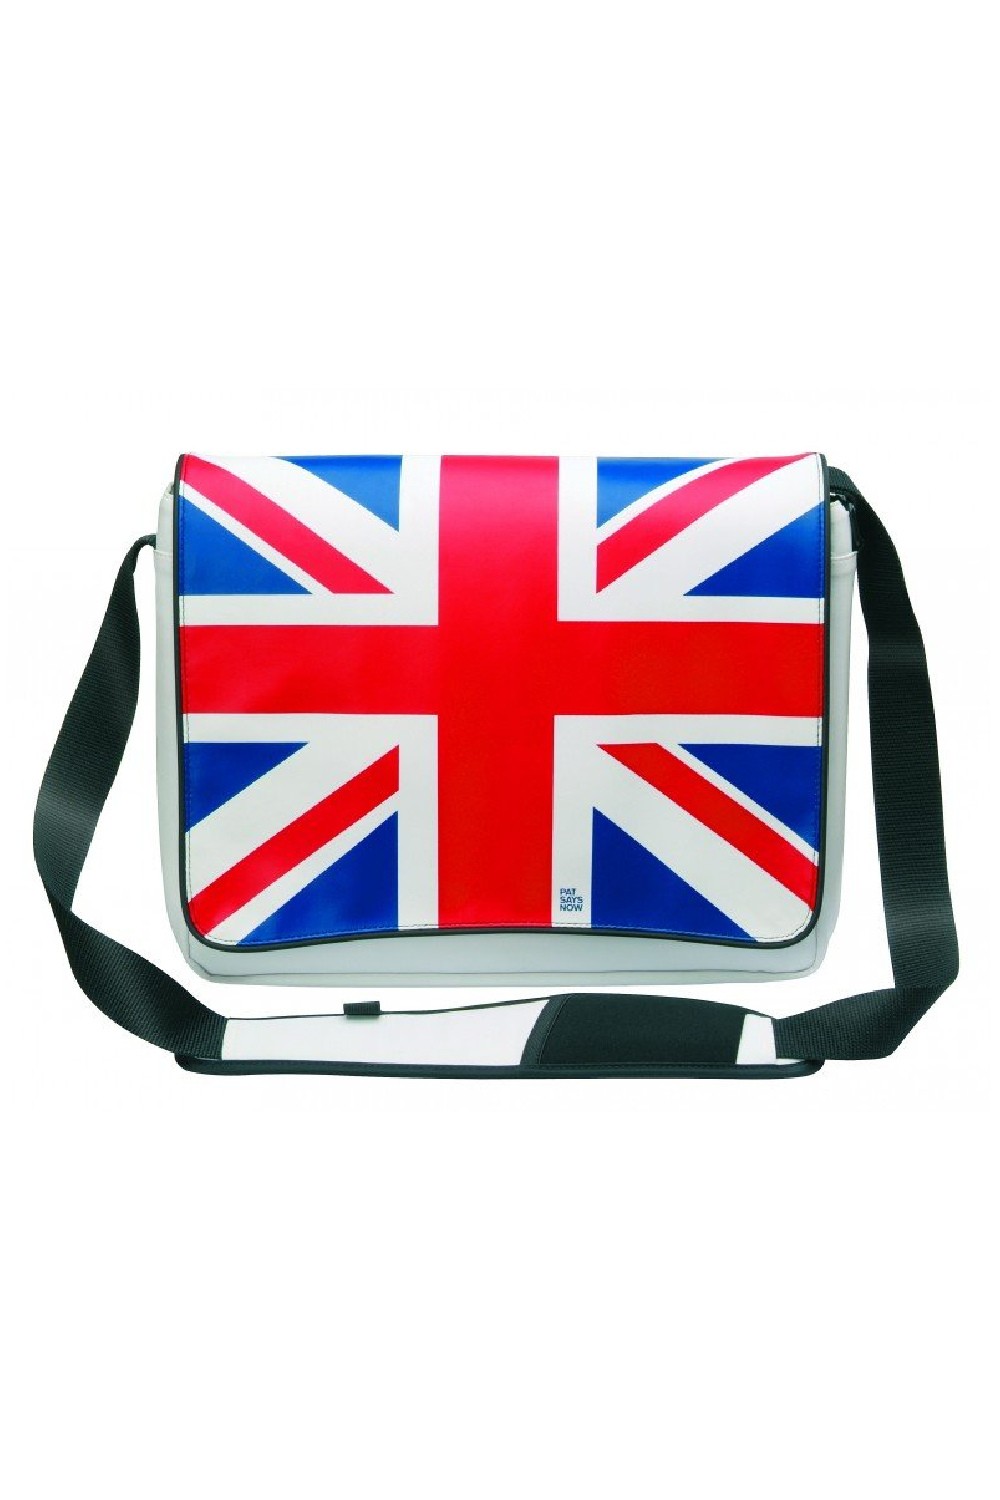 Τσάντα Laptop UK UNION JACK 14-15.6